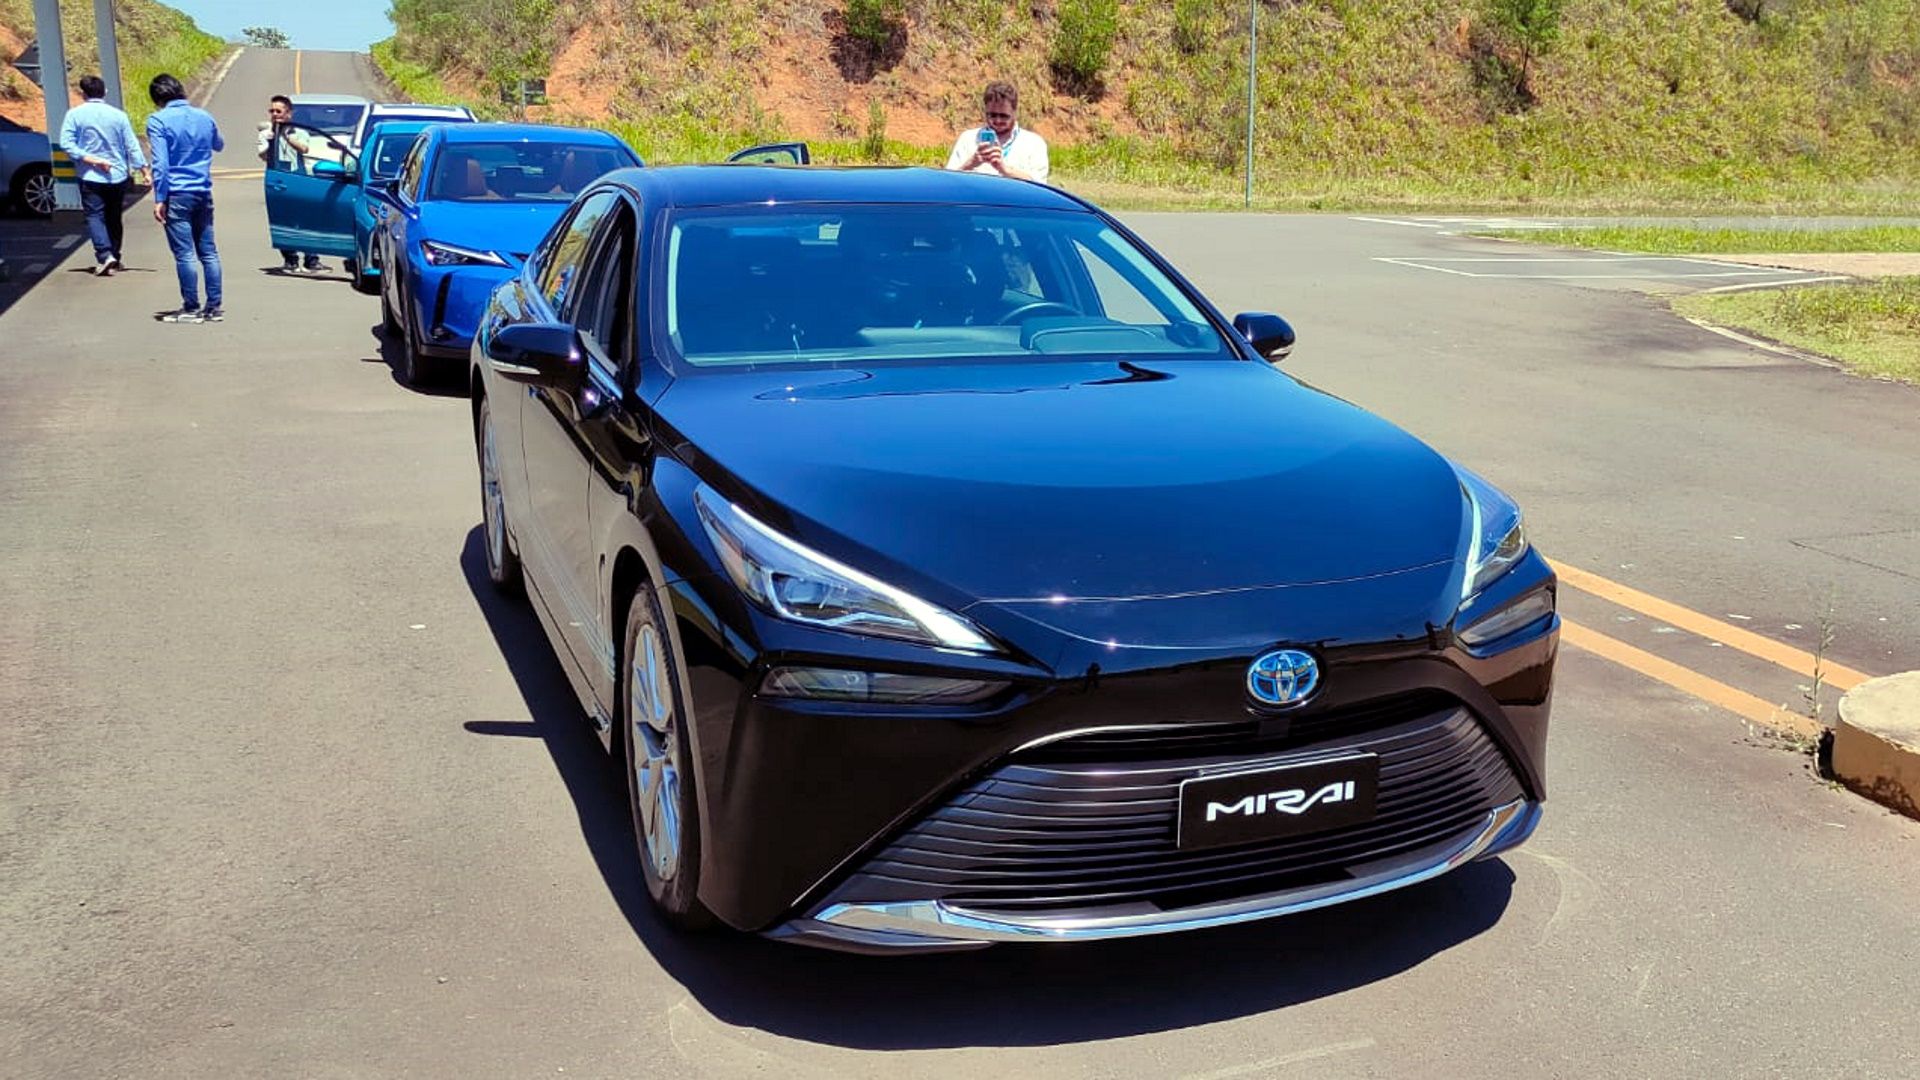 ESPETACULAR: descreve bem o novo carro de corrida movido a hidrogênio da  Toyota